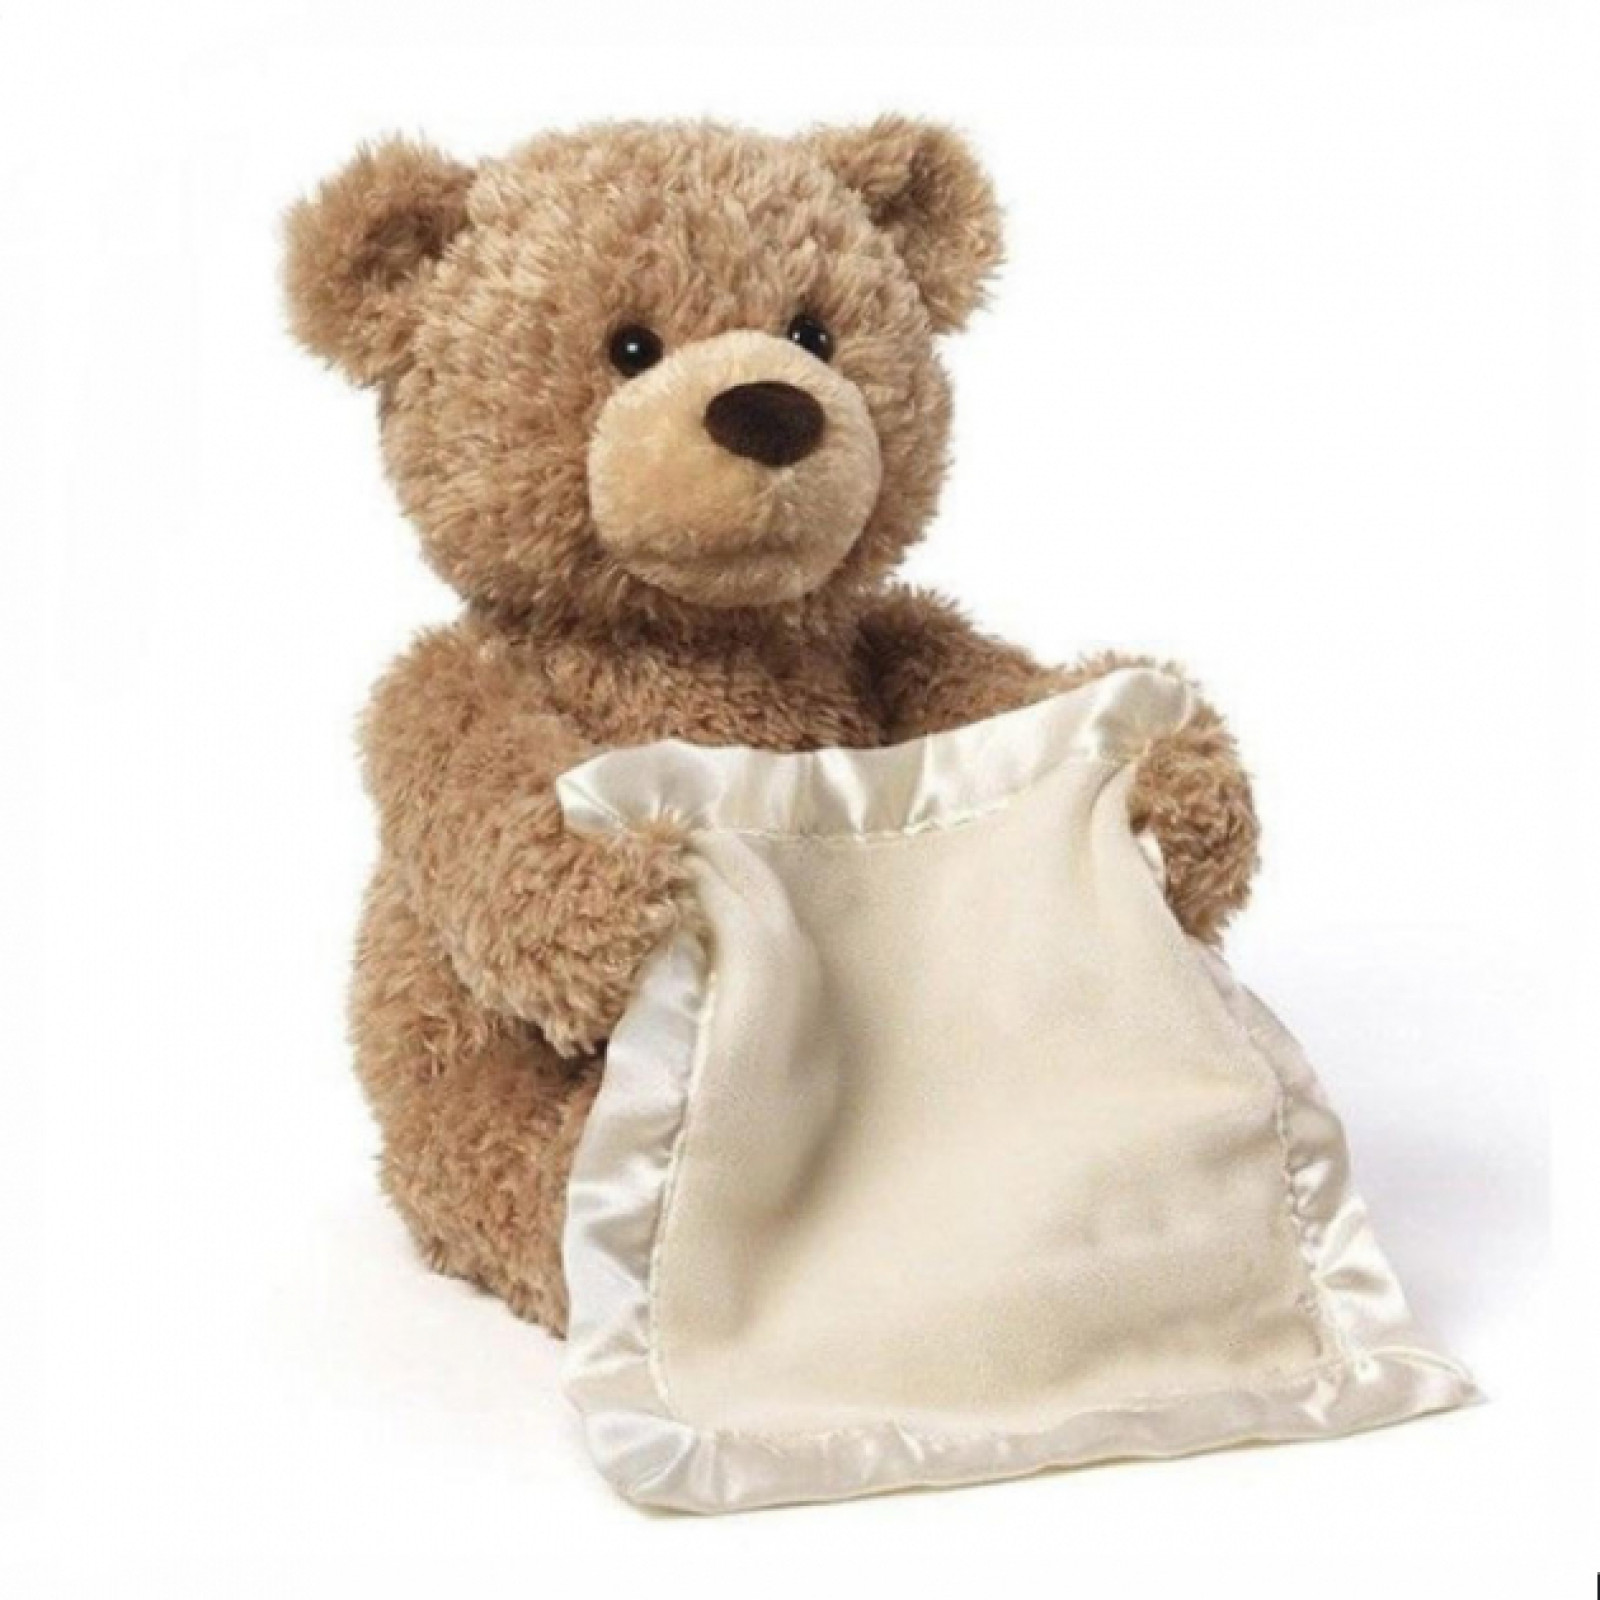 Плюшевый Мишка Peekaboo Bear 30 см, говорящий, интерактивная мягкая игрушка Пикабу 183787